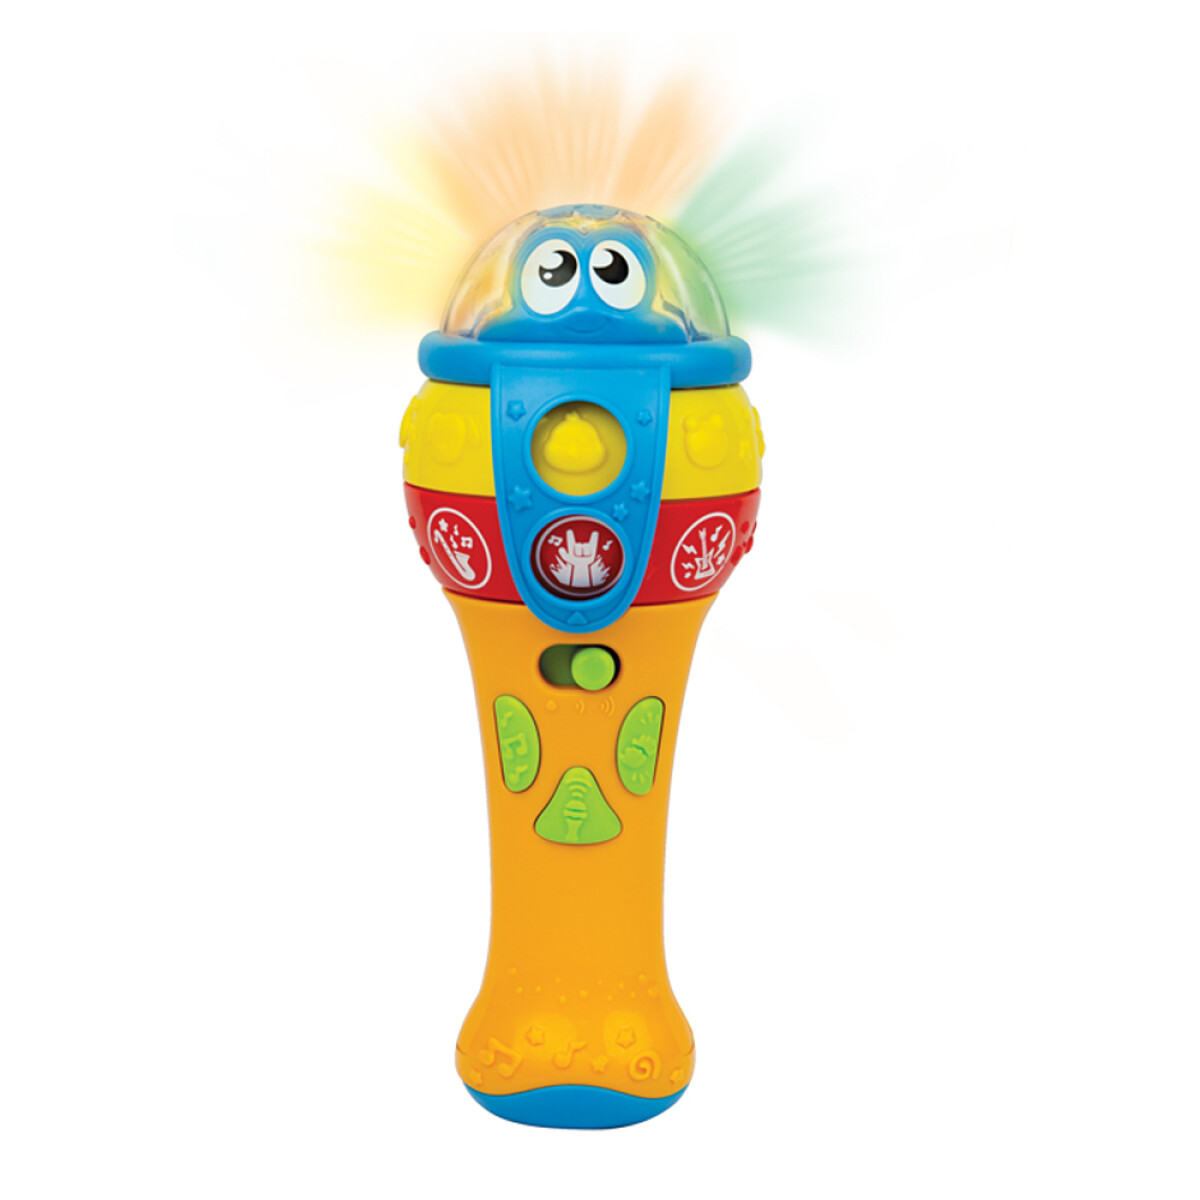 Micrófono Infantil Inalámbrico c/Luces Ritmos Sonidos Winfun - Multicolor 